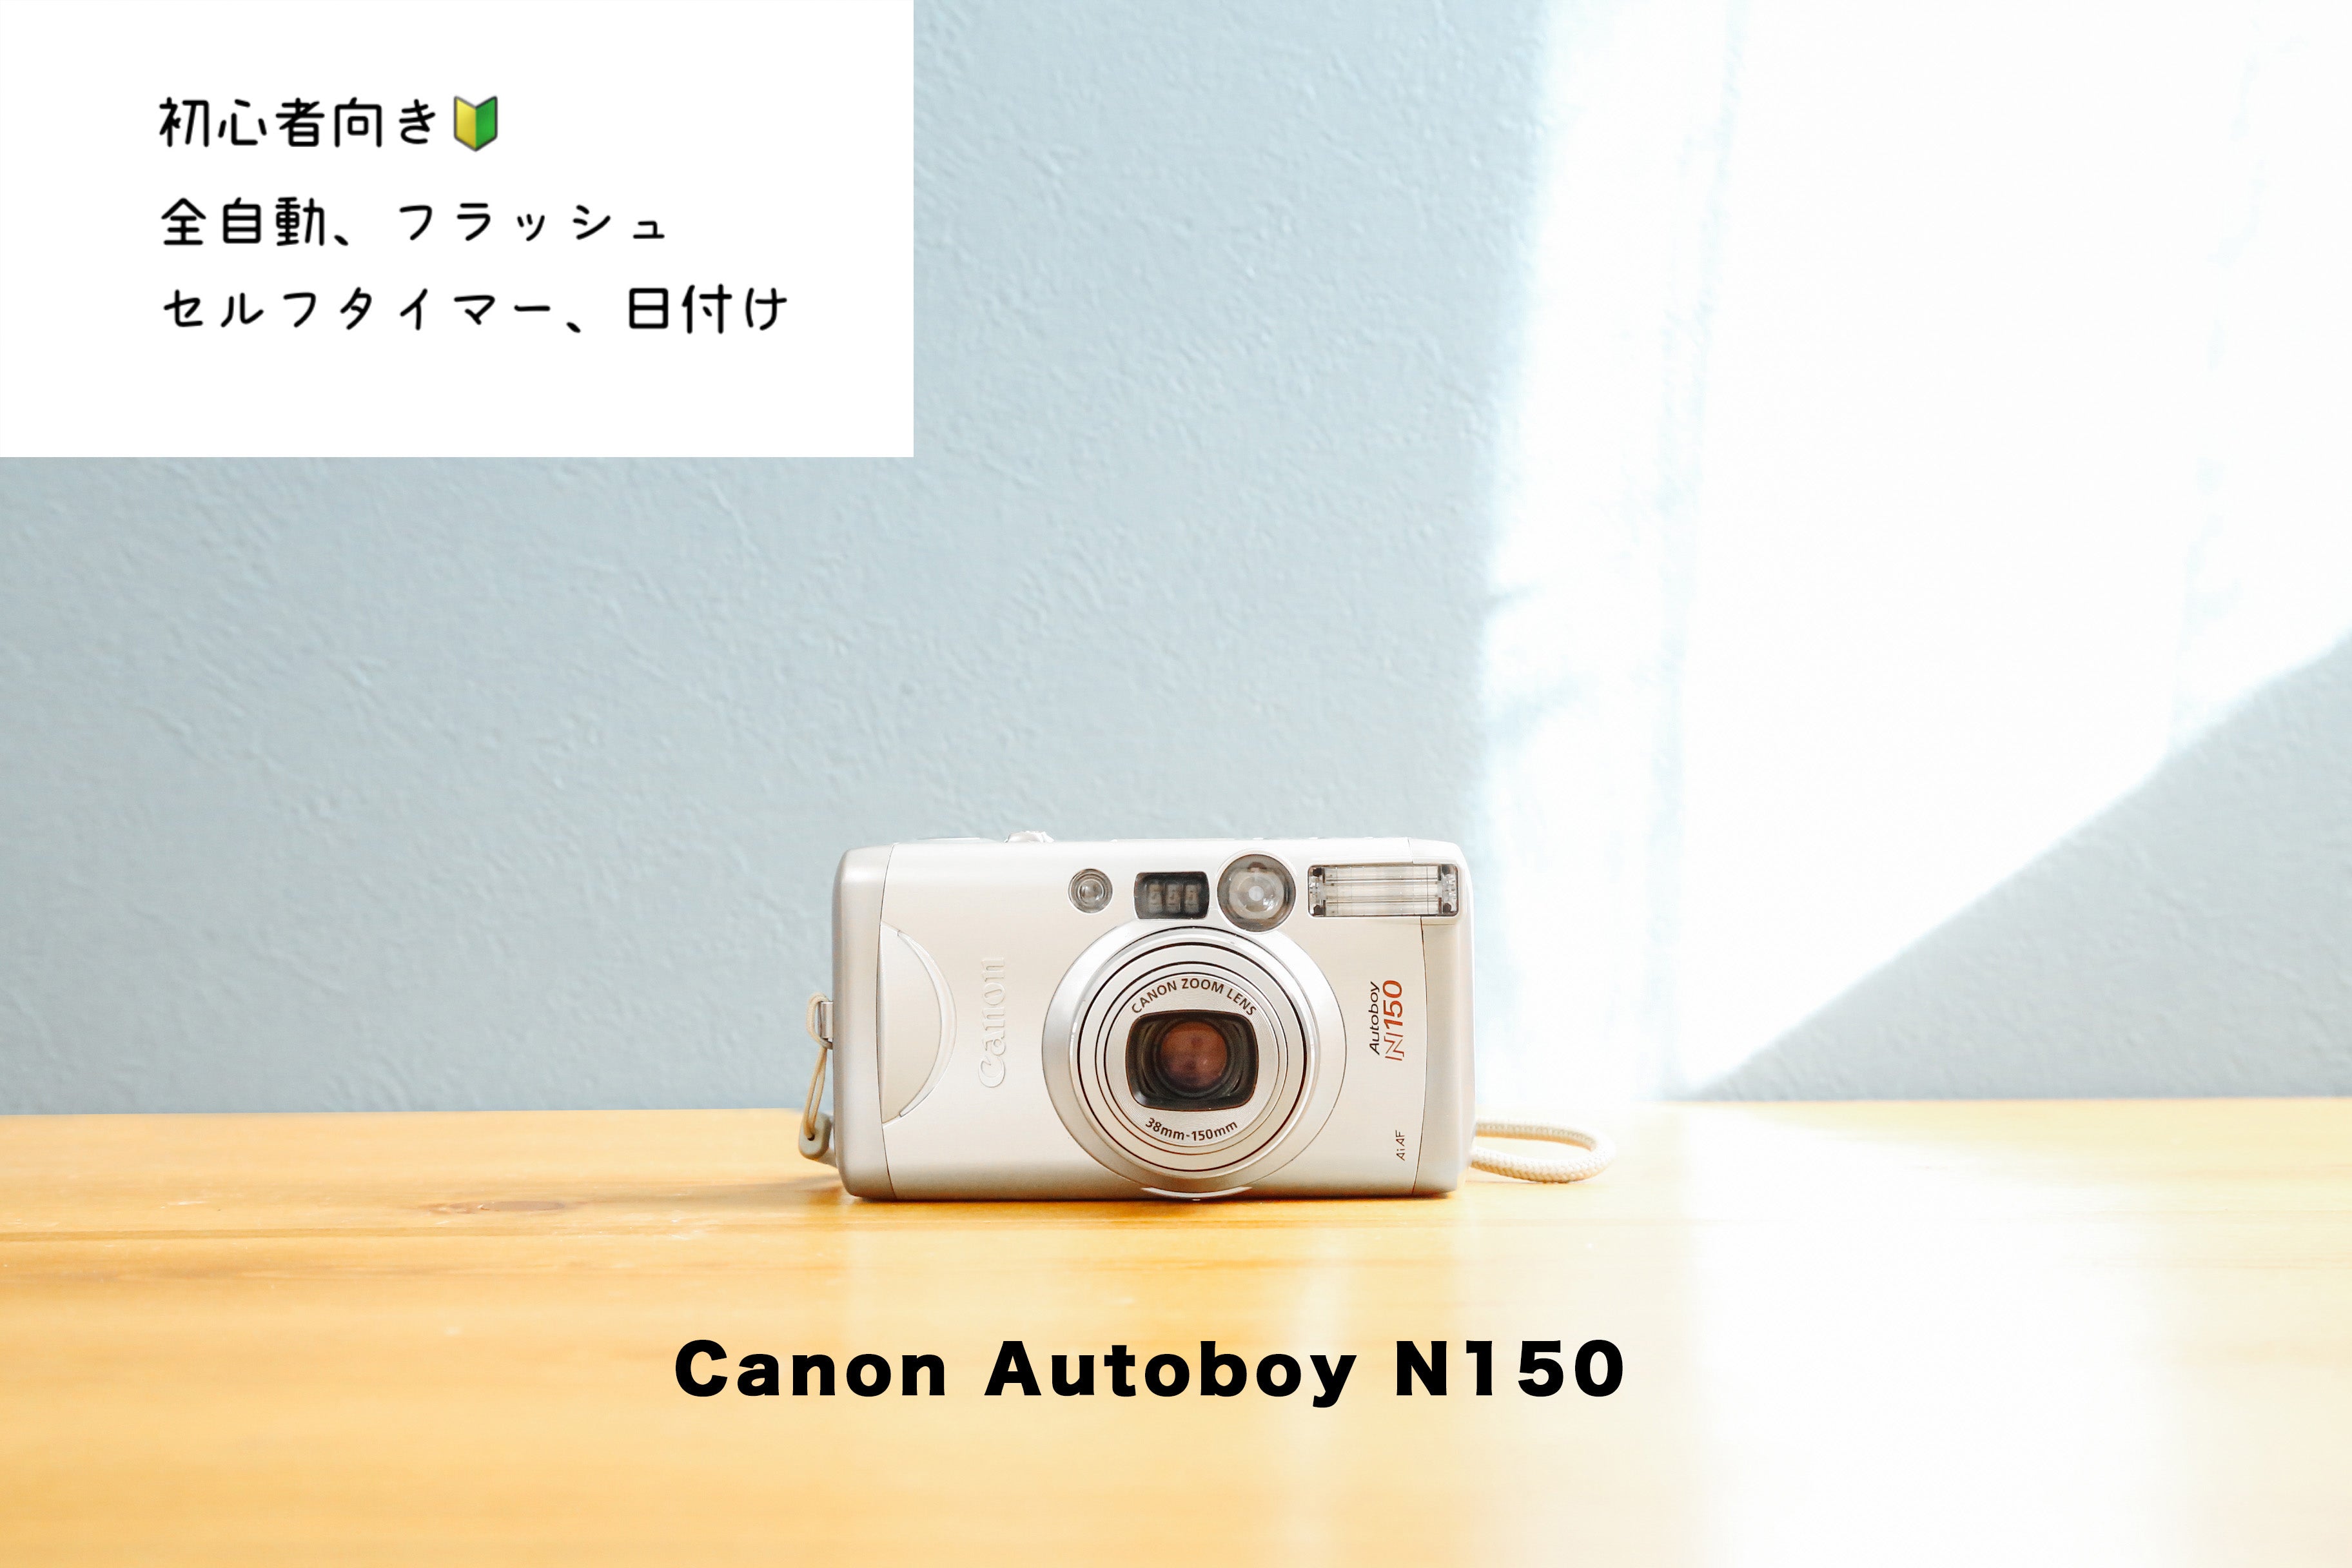 CANON AUTOBODY N150 動作確認済みフィルムカメラ #321